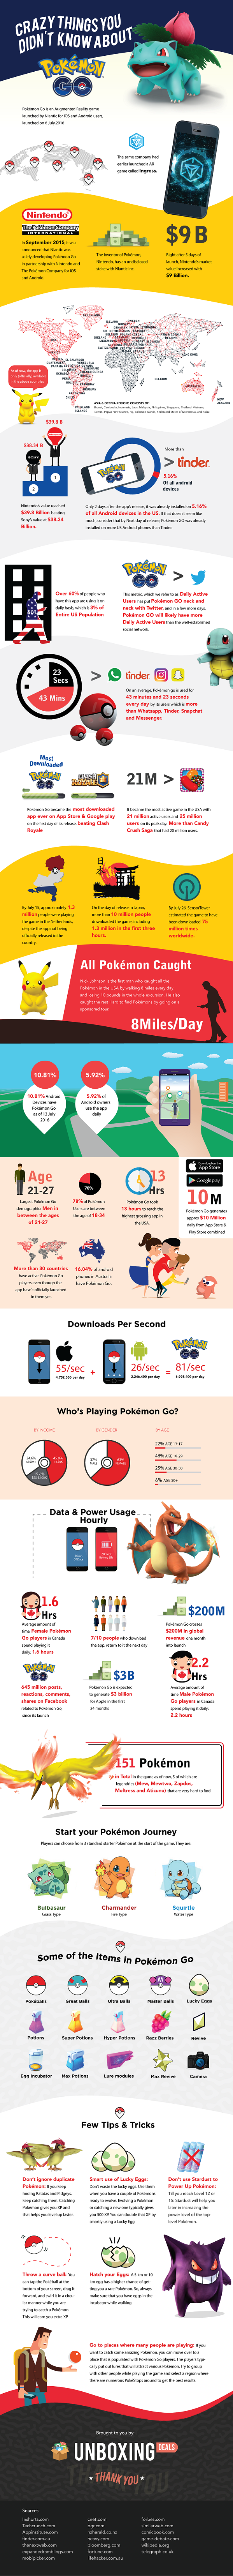 Pokemon-Go-Infographic